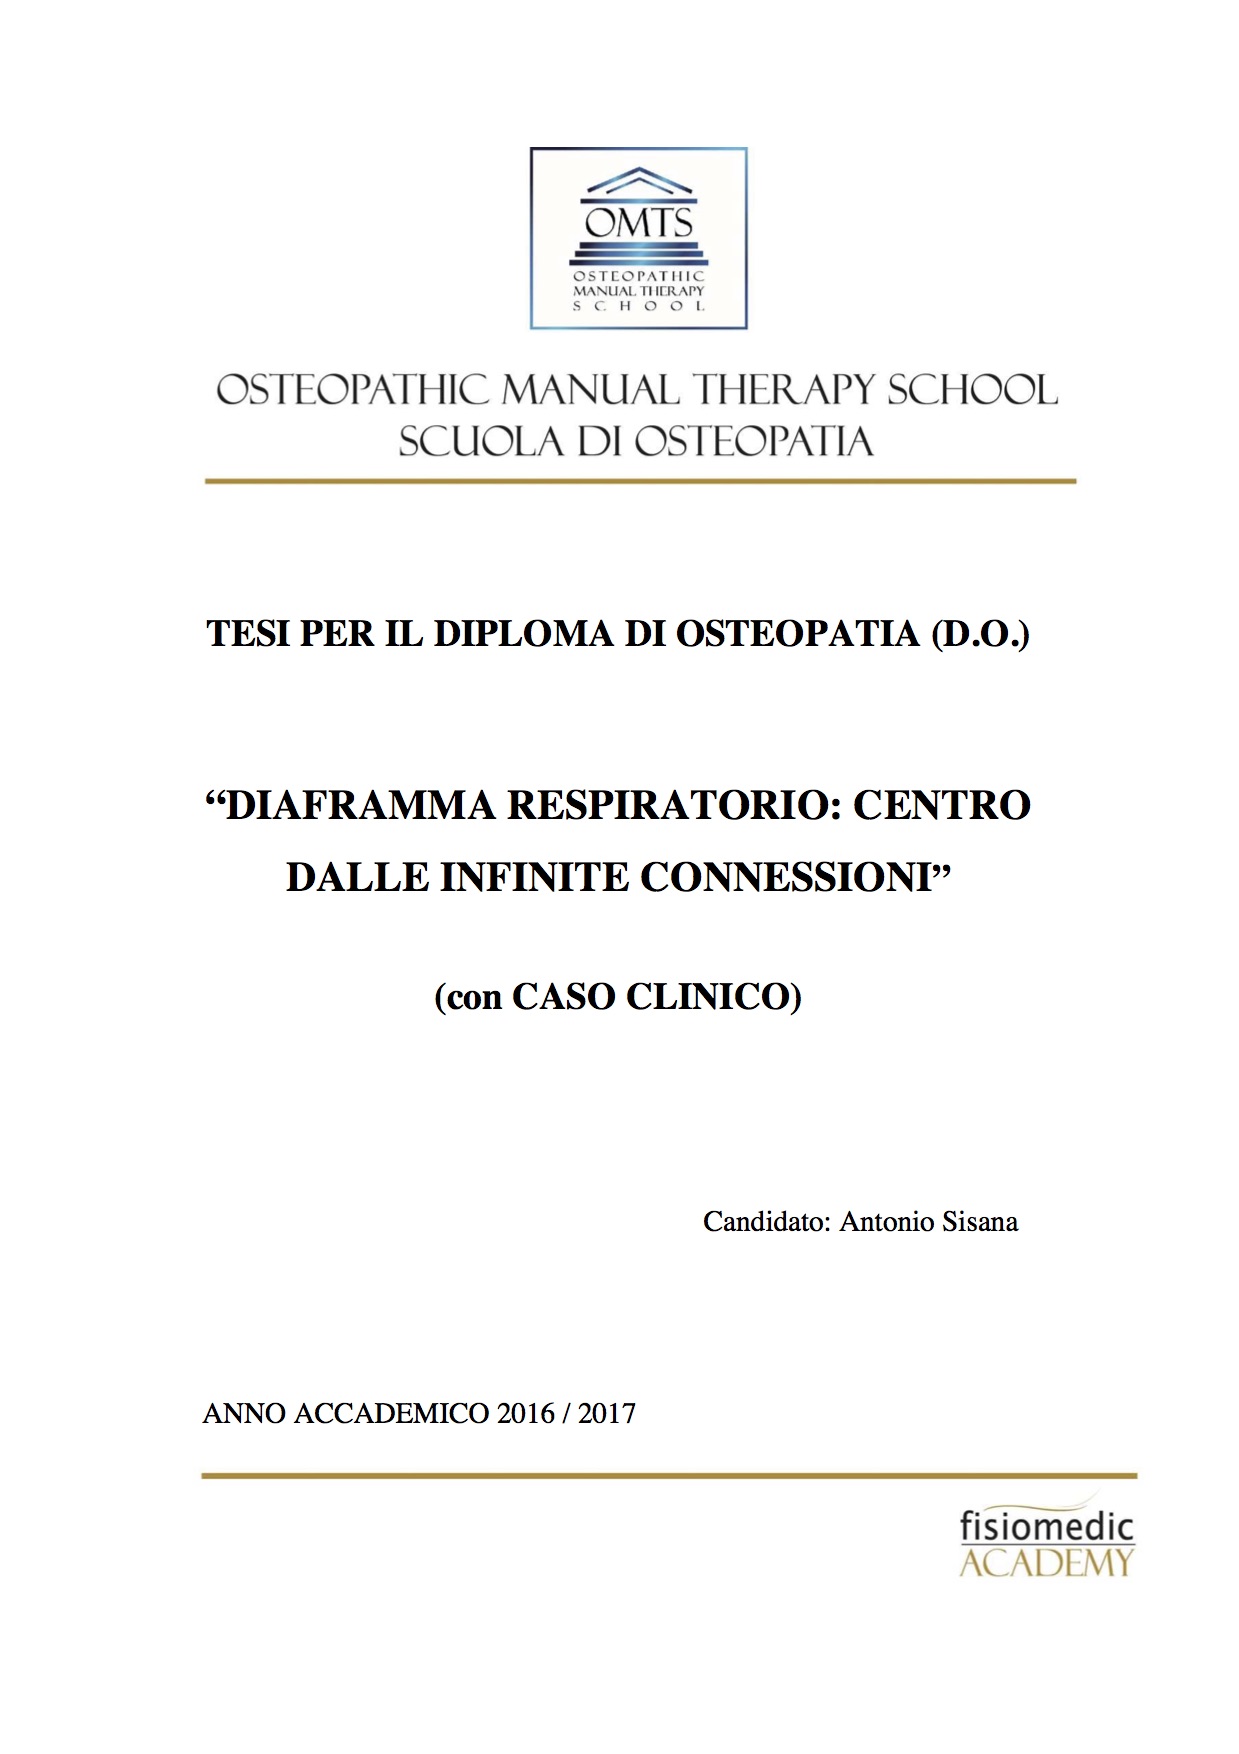 Antonio Sisana Tesi Diploma Osteopatia 2017